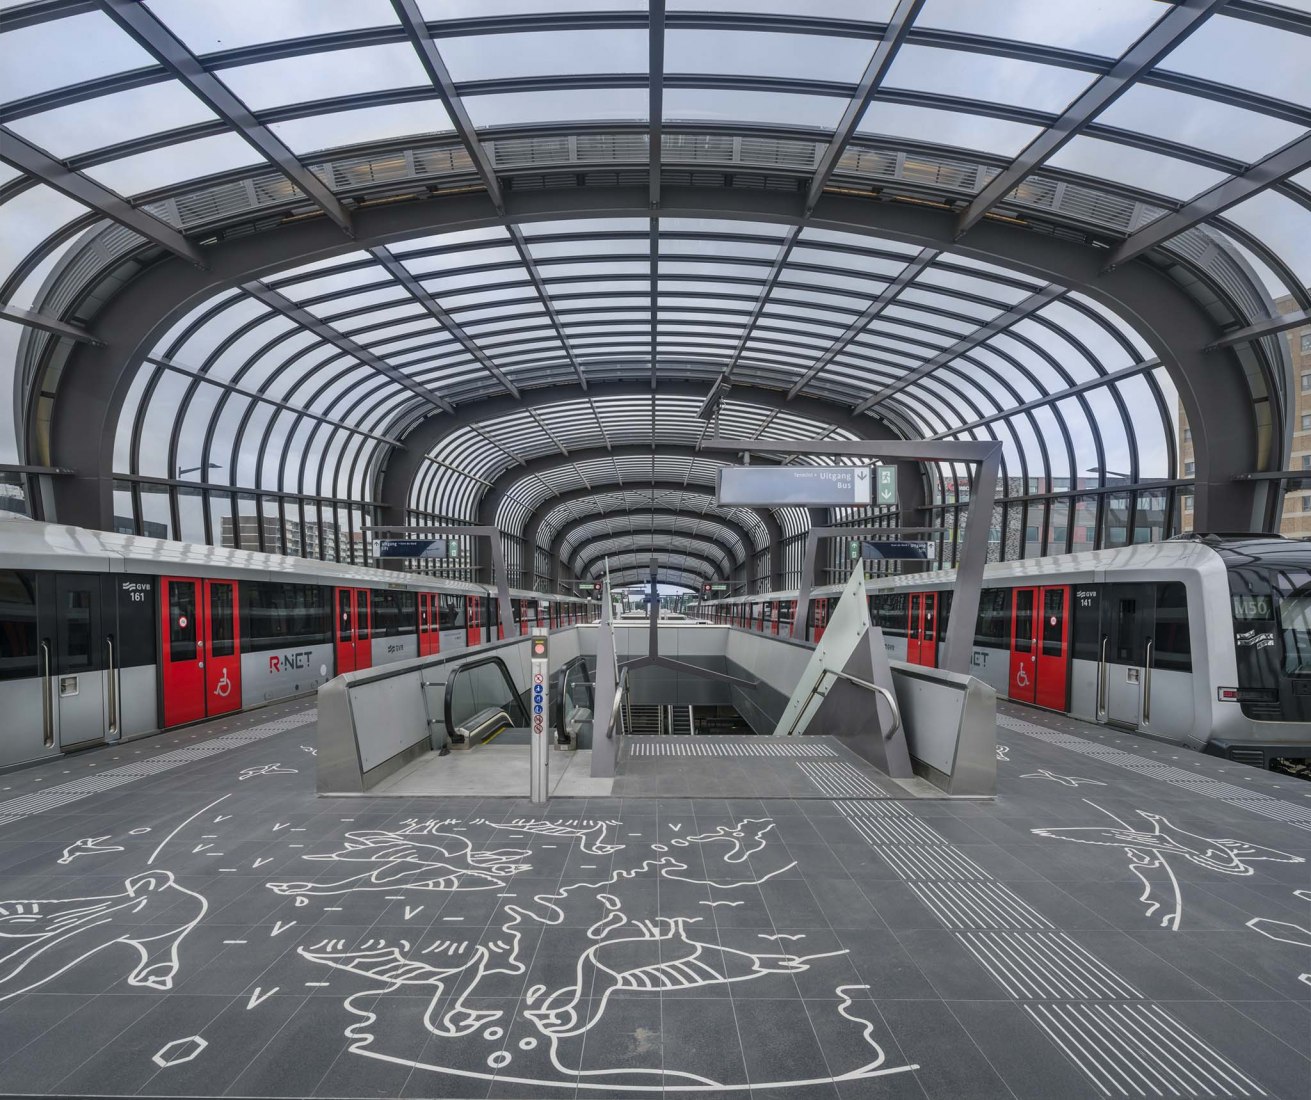 Estación Noord. Línea de metro Norte-Sur de la ciudad de Amsterdam por Benthem Crouwel Architects. Fotografía cortesía de Benthem Crouwel Architects.